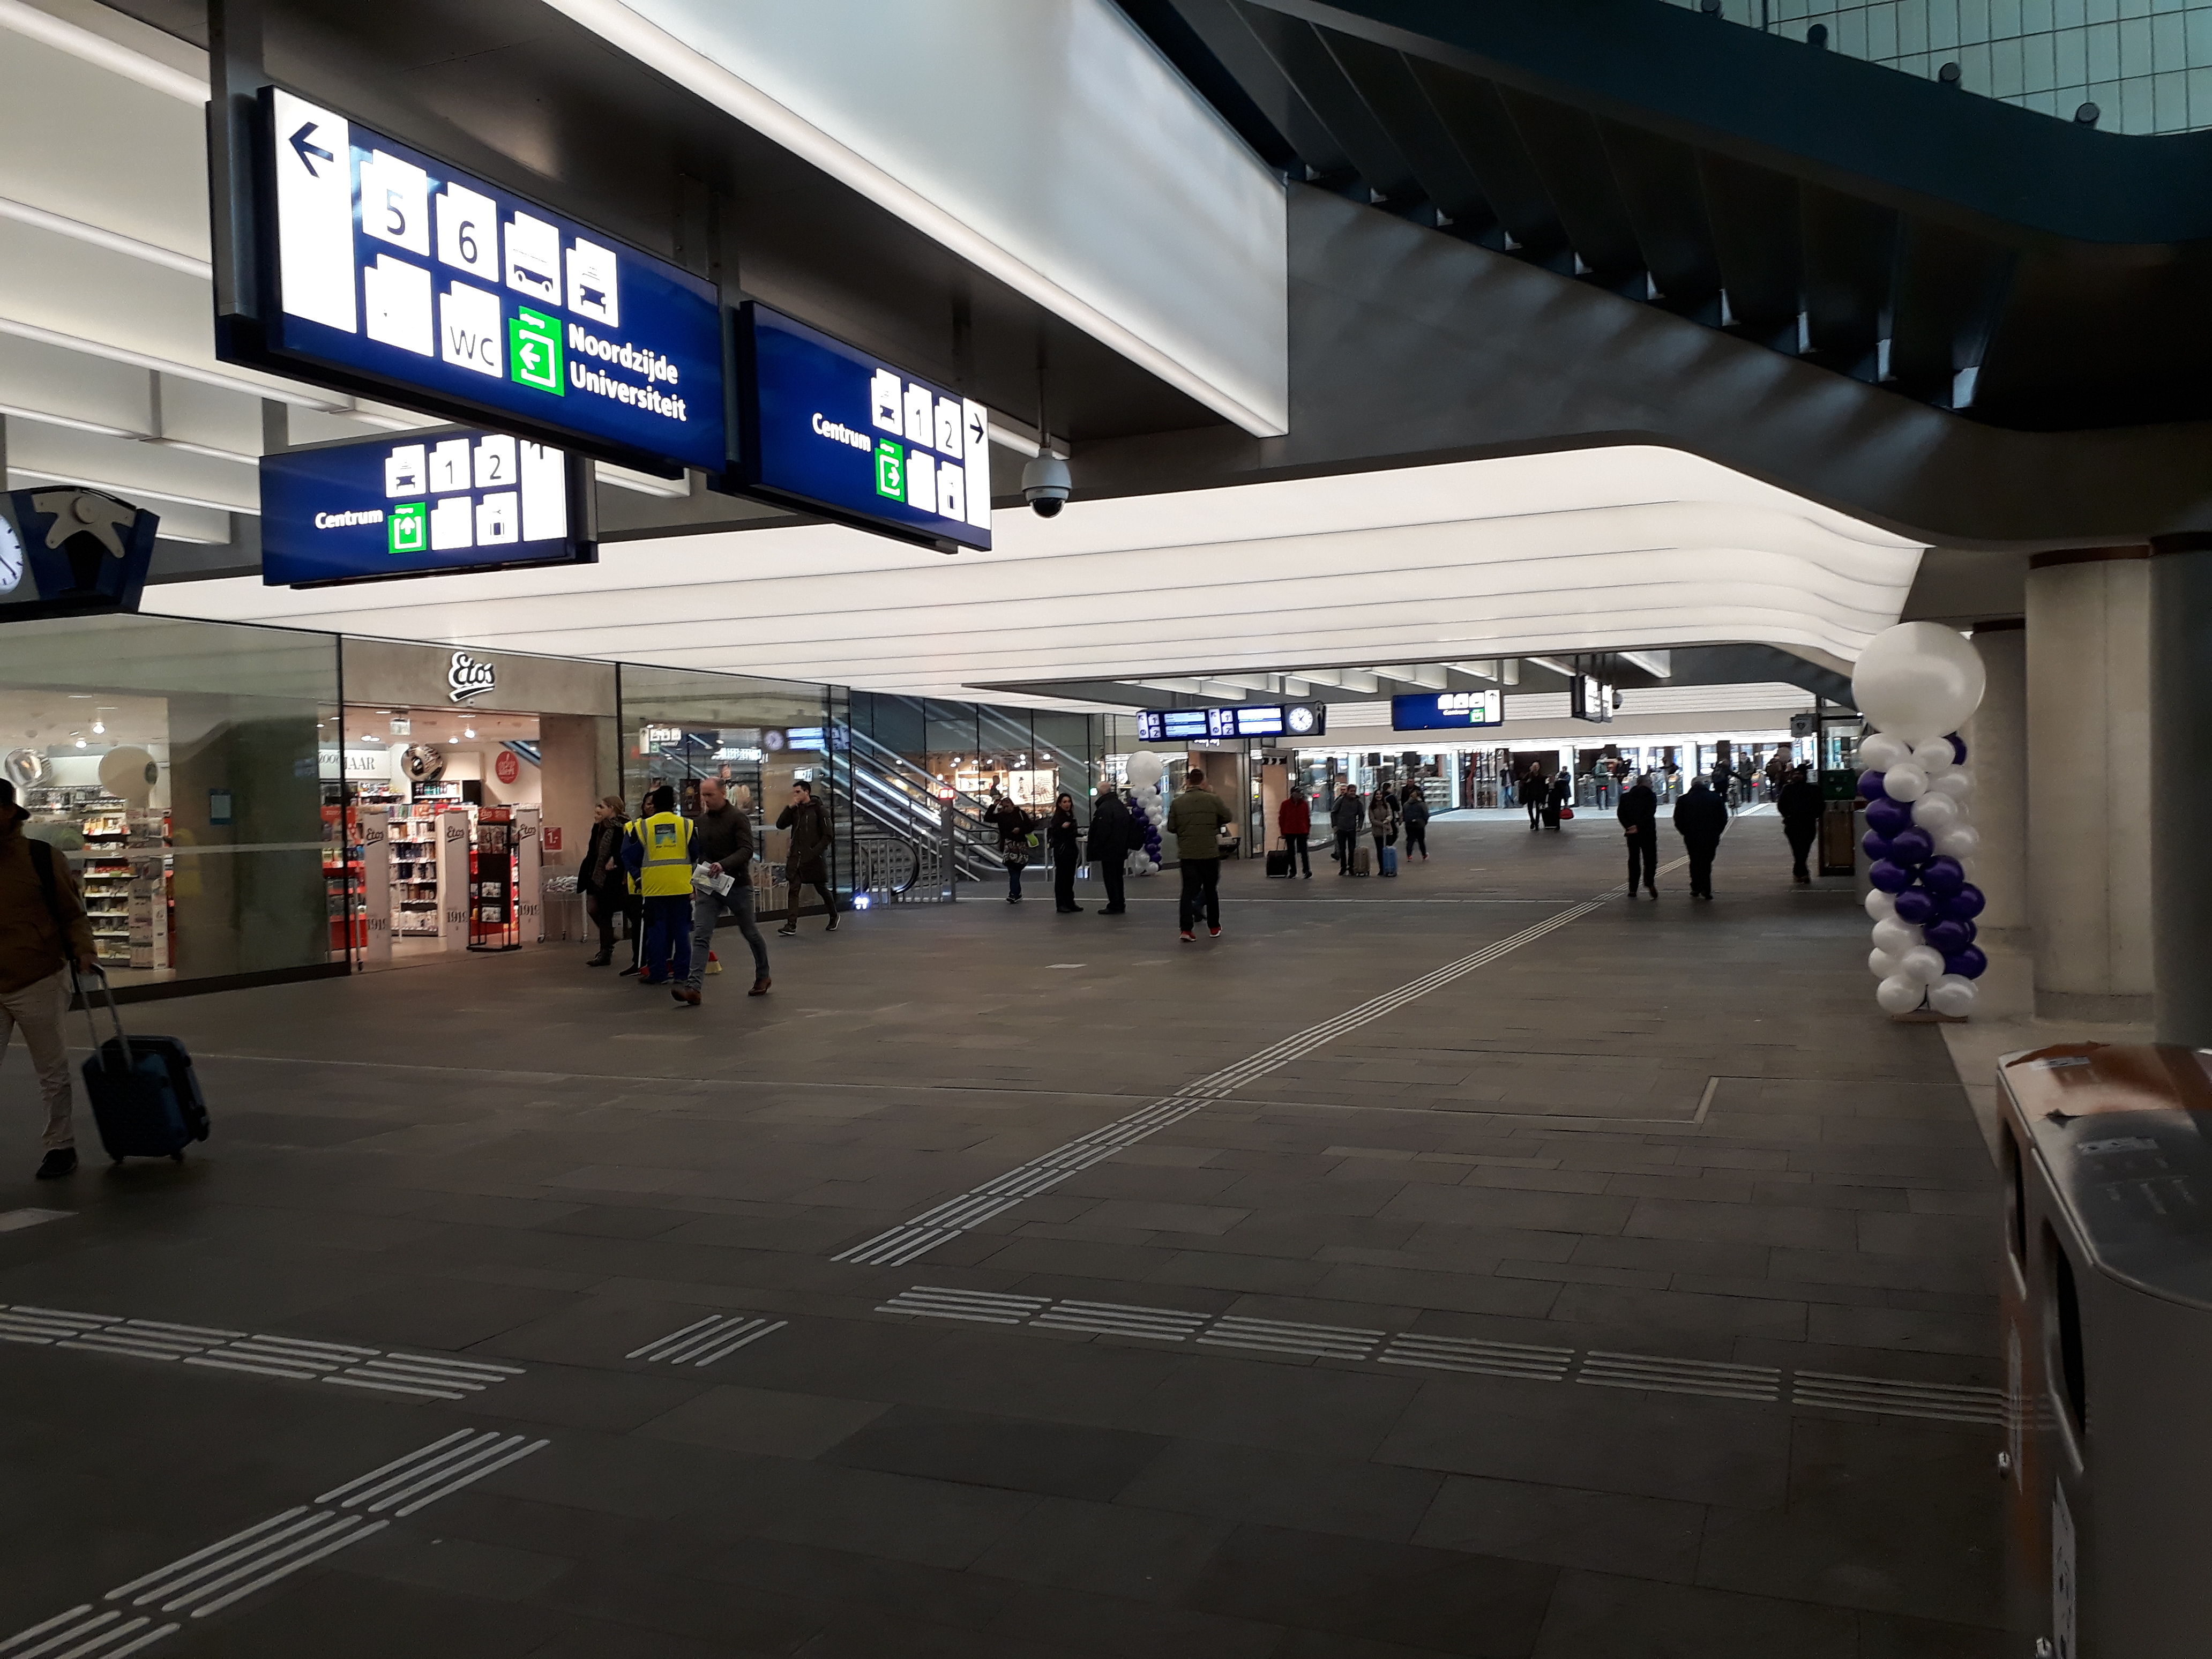 Nieuwe reizigerstunnel station Eindhoven